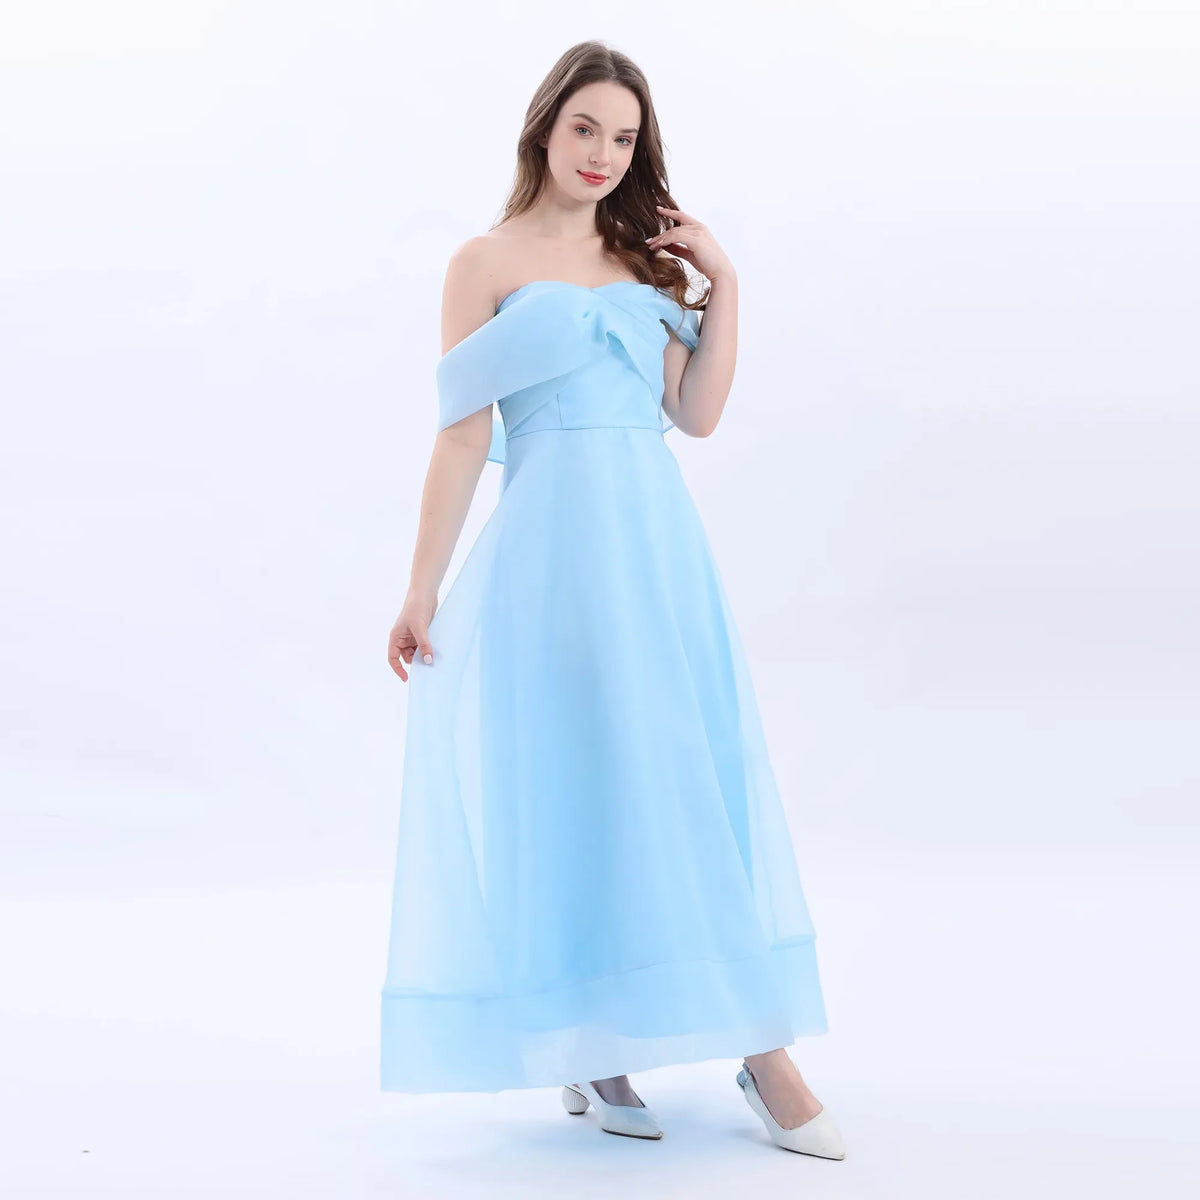 Sky Blue Evening Dress For Women